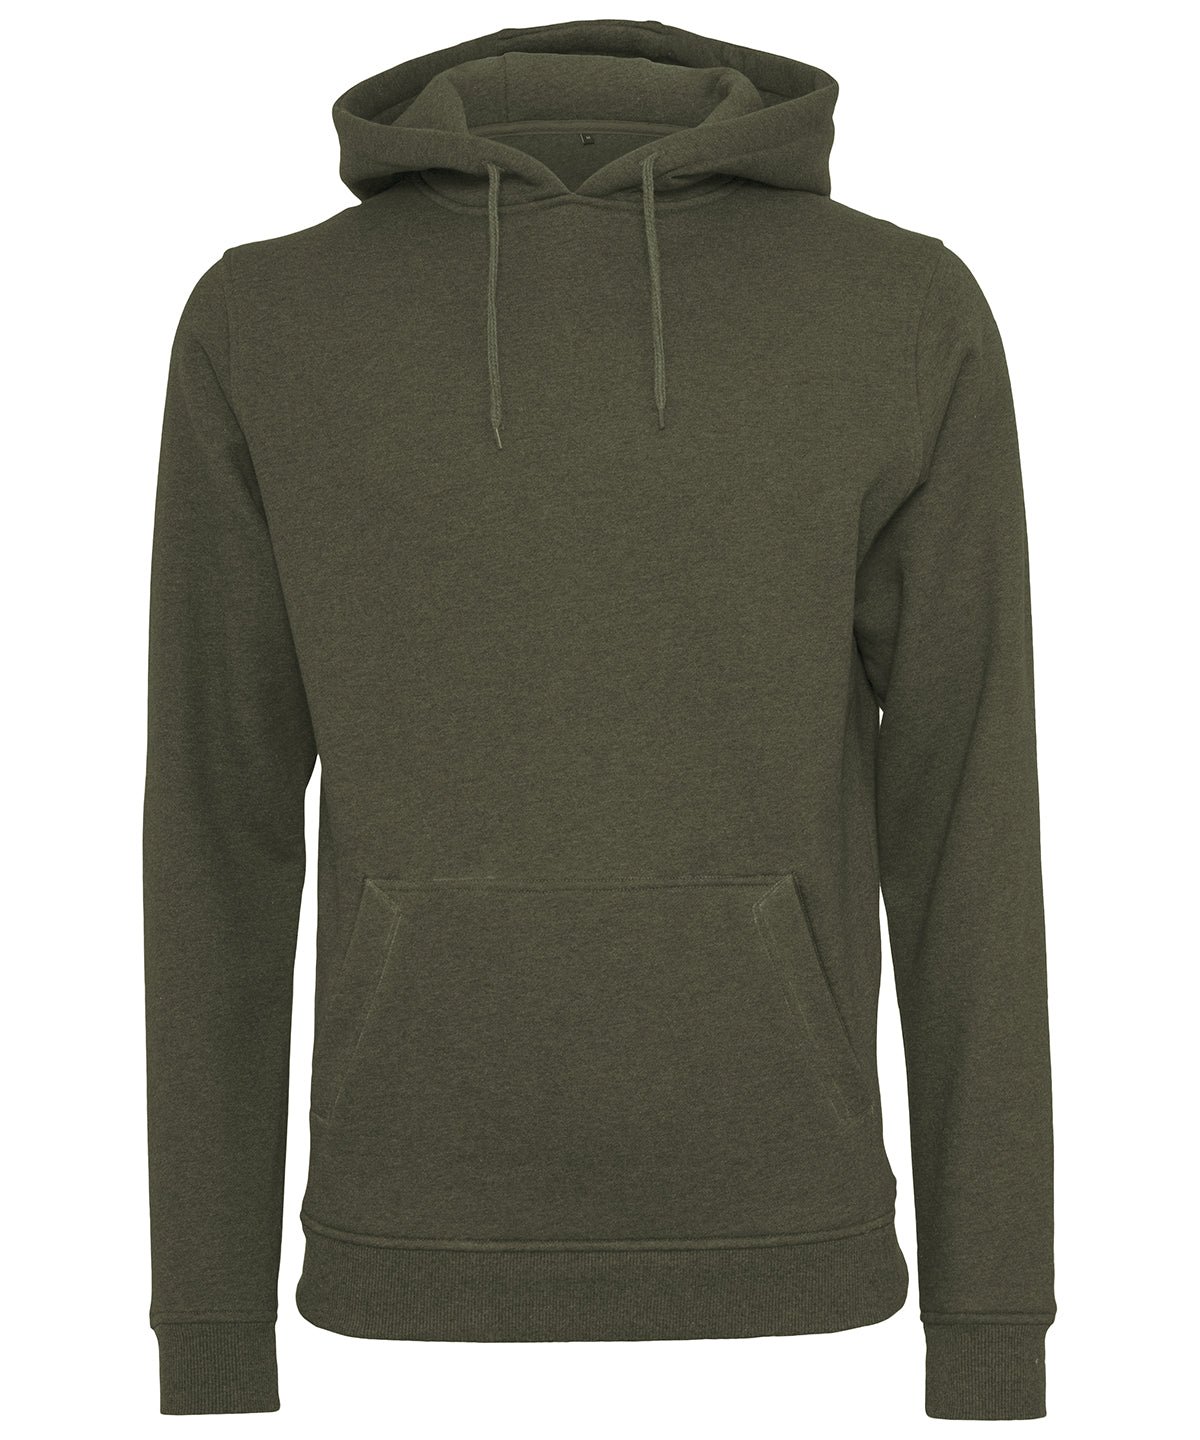 Personalised Hoodies - Black Build Your Brand Heavy hoodie